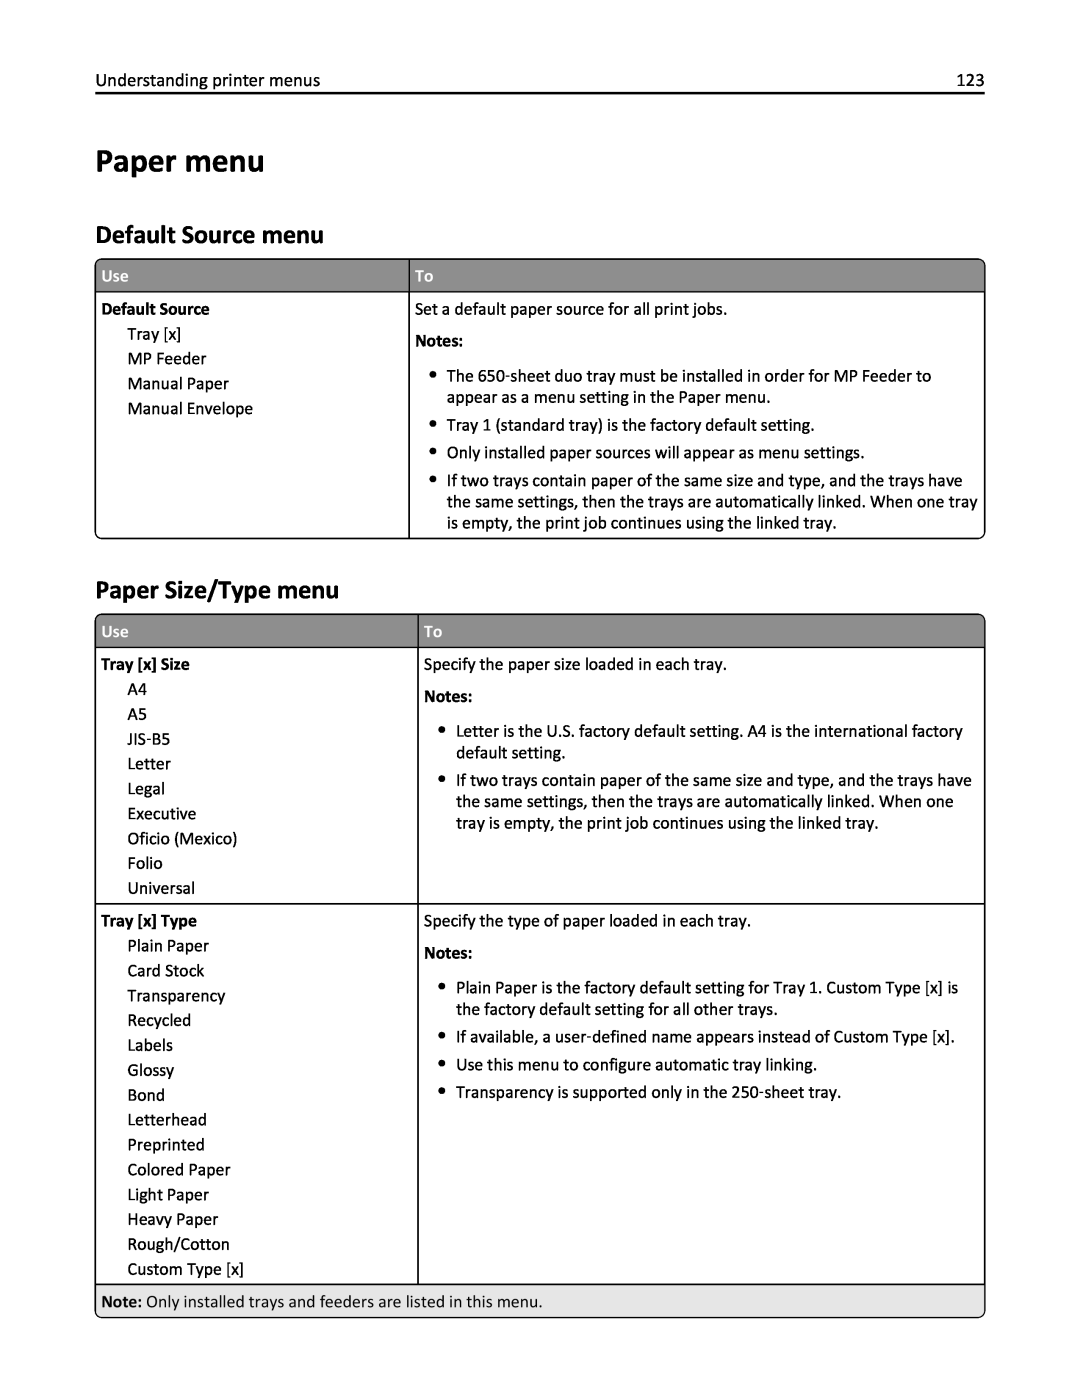 Lexmark 436 manual Paper menu, Default Source menu, Paper Size/Type menu, Tray x Size, Tray x Type 